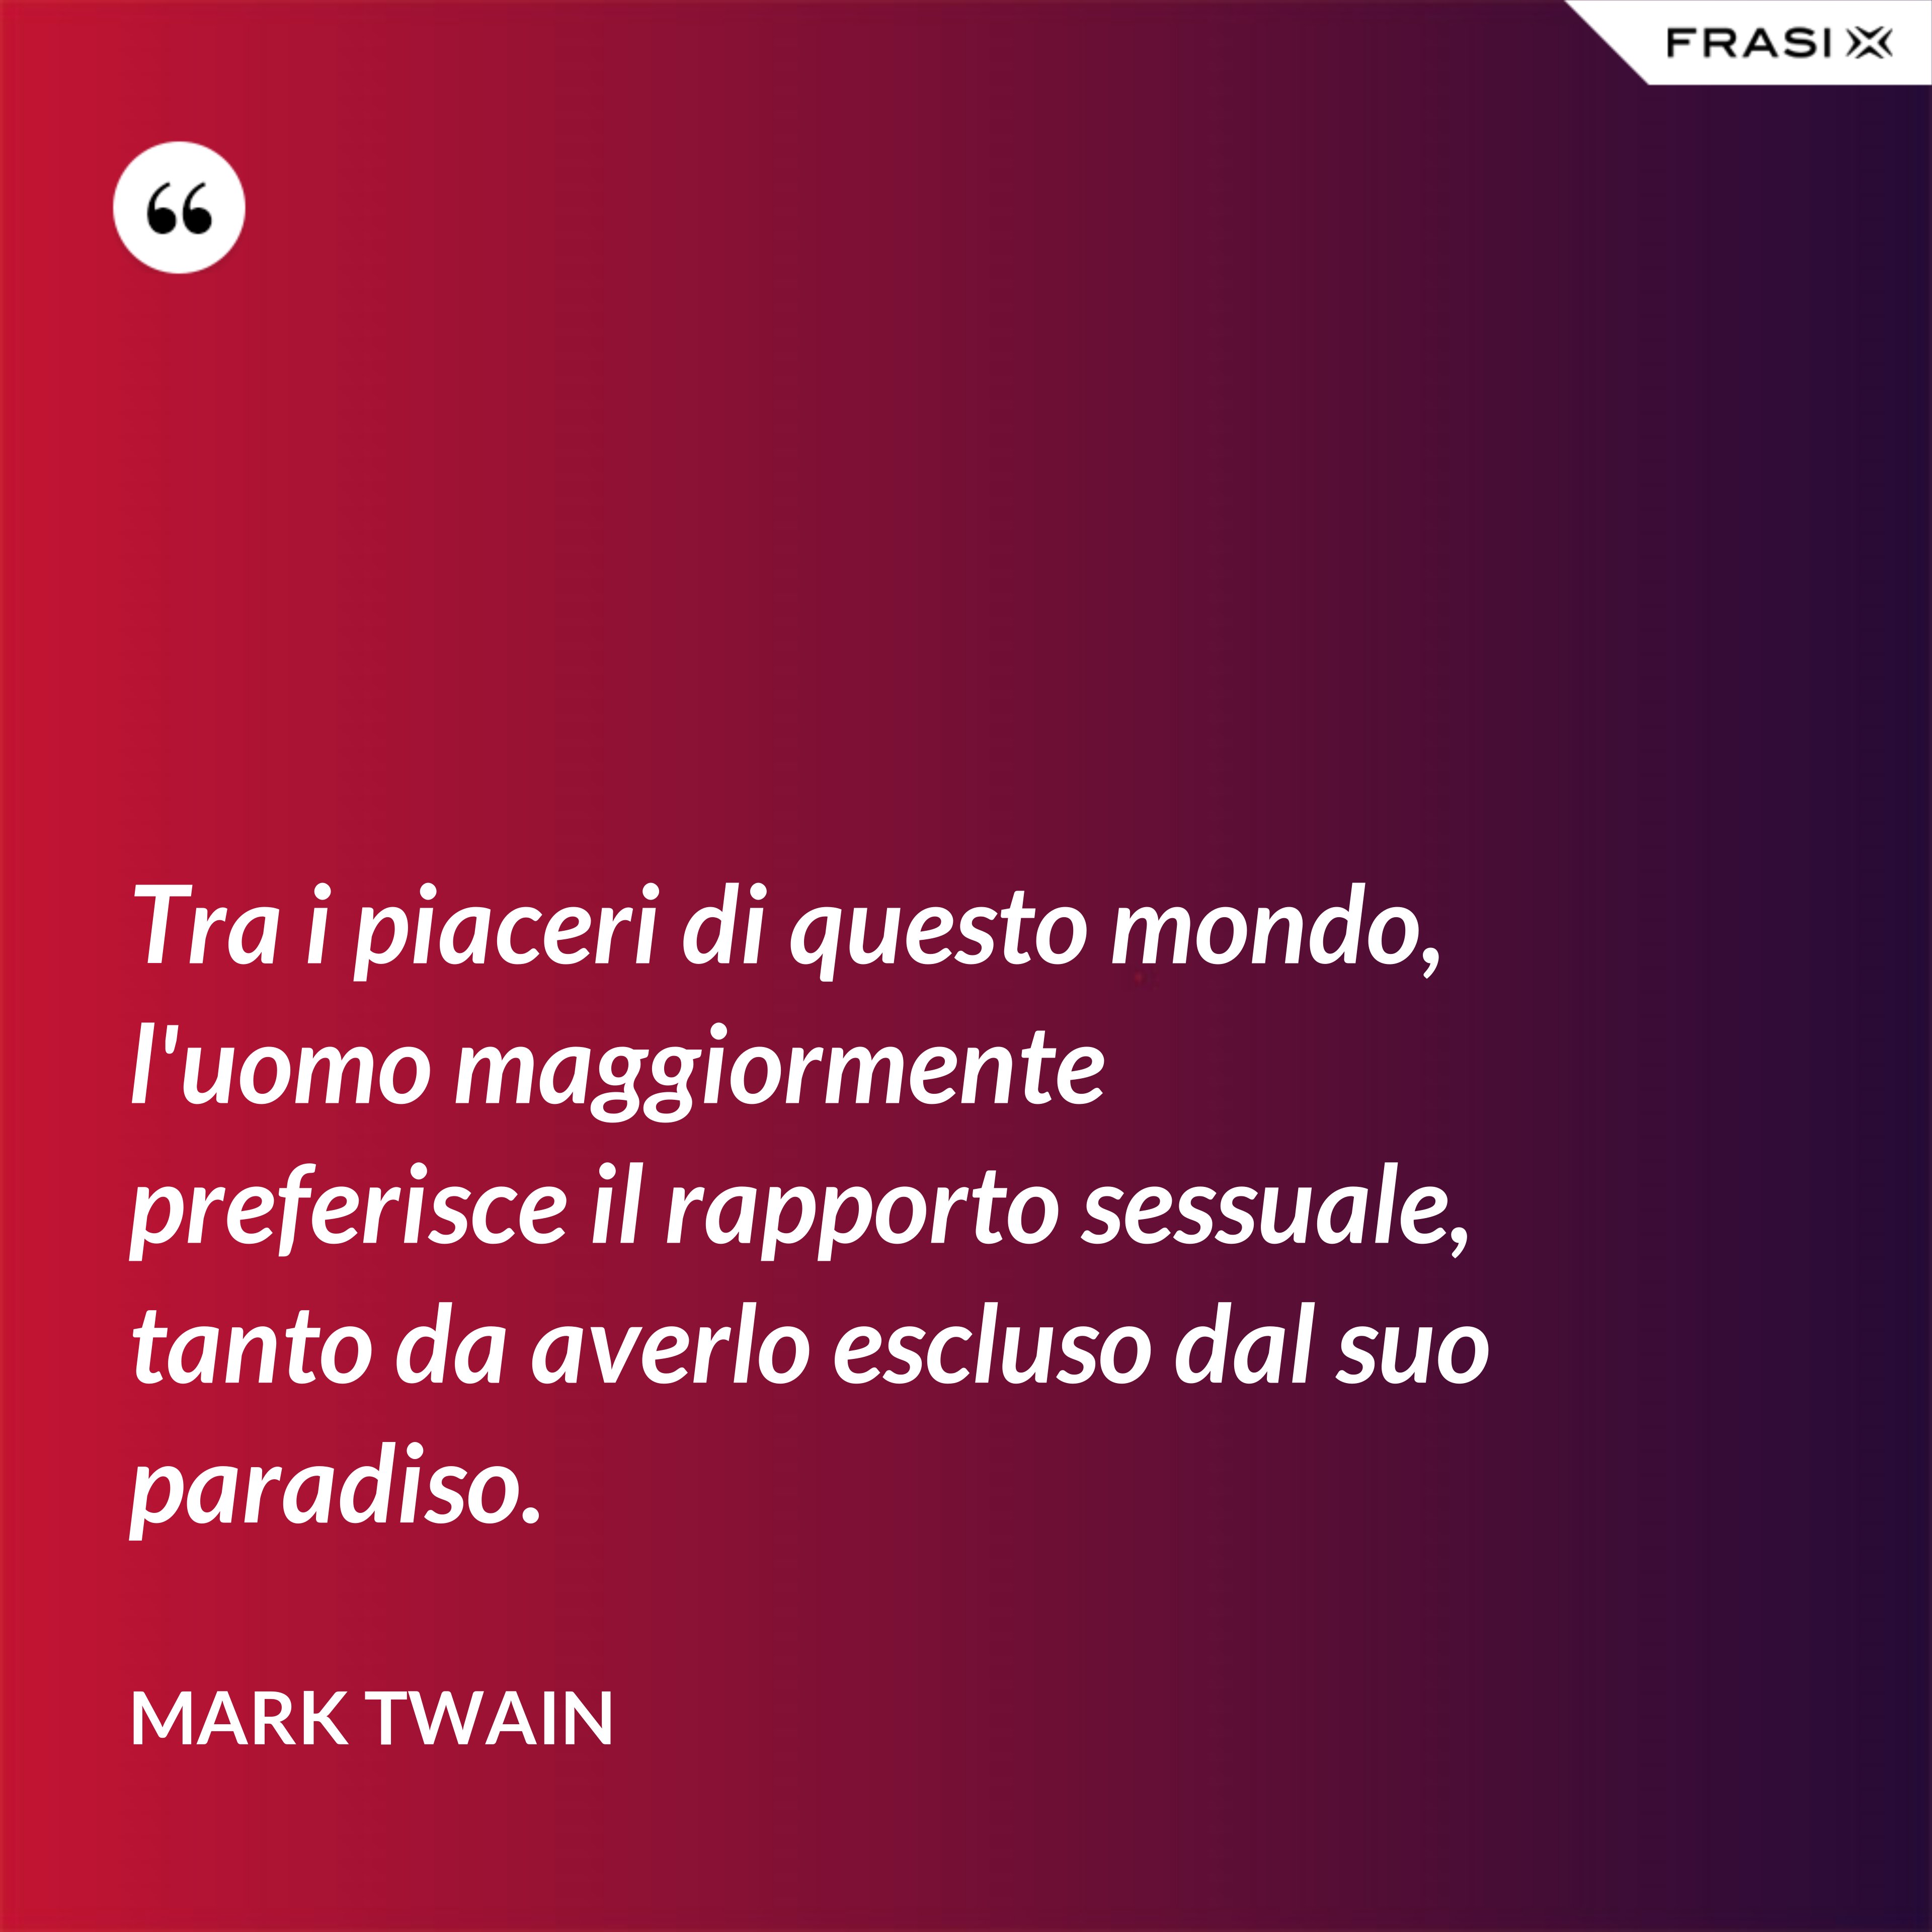 Tra i piaceri di questo mondo, l'uomo maggiormente preferisce il rapporto sessuale, tanto da averlo escluso dal suo paradiso. - Mark Twain